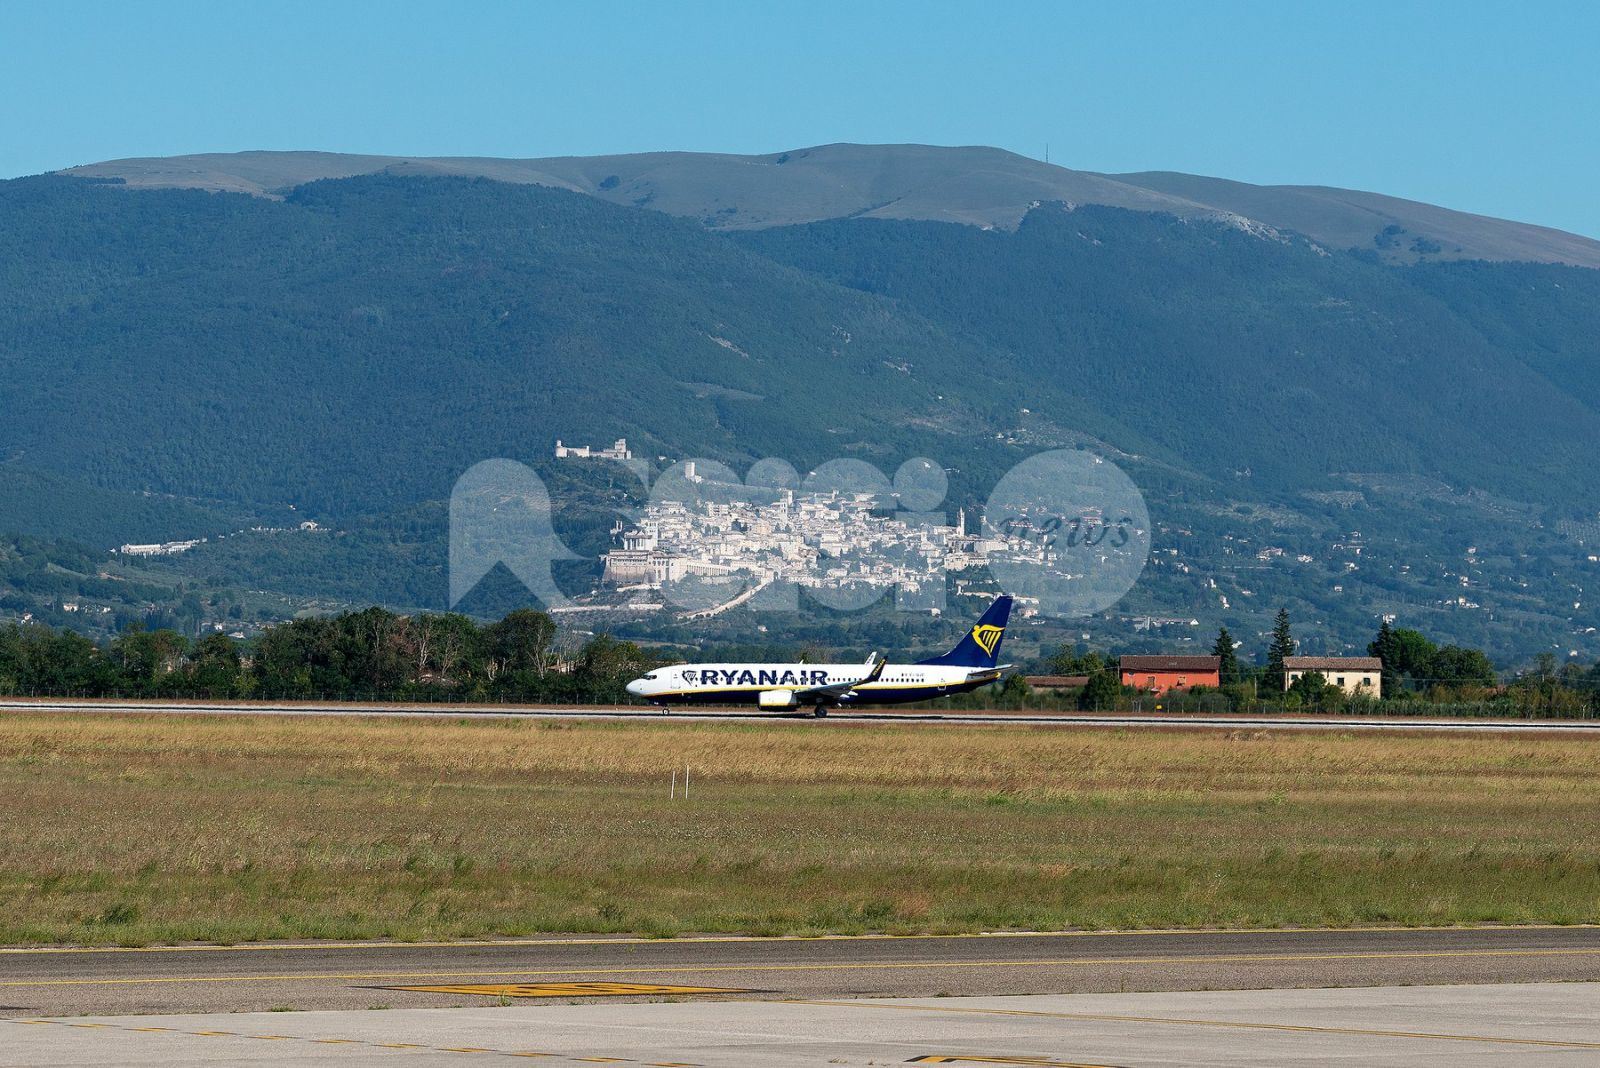 Voli del 2022 dall'aeroporto di Perugia: le tratte nuove e quelle confermate